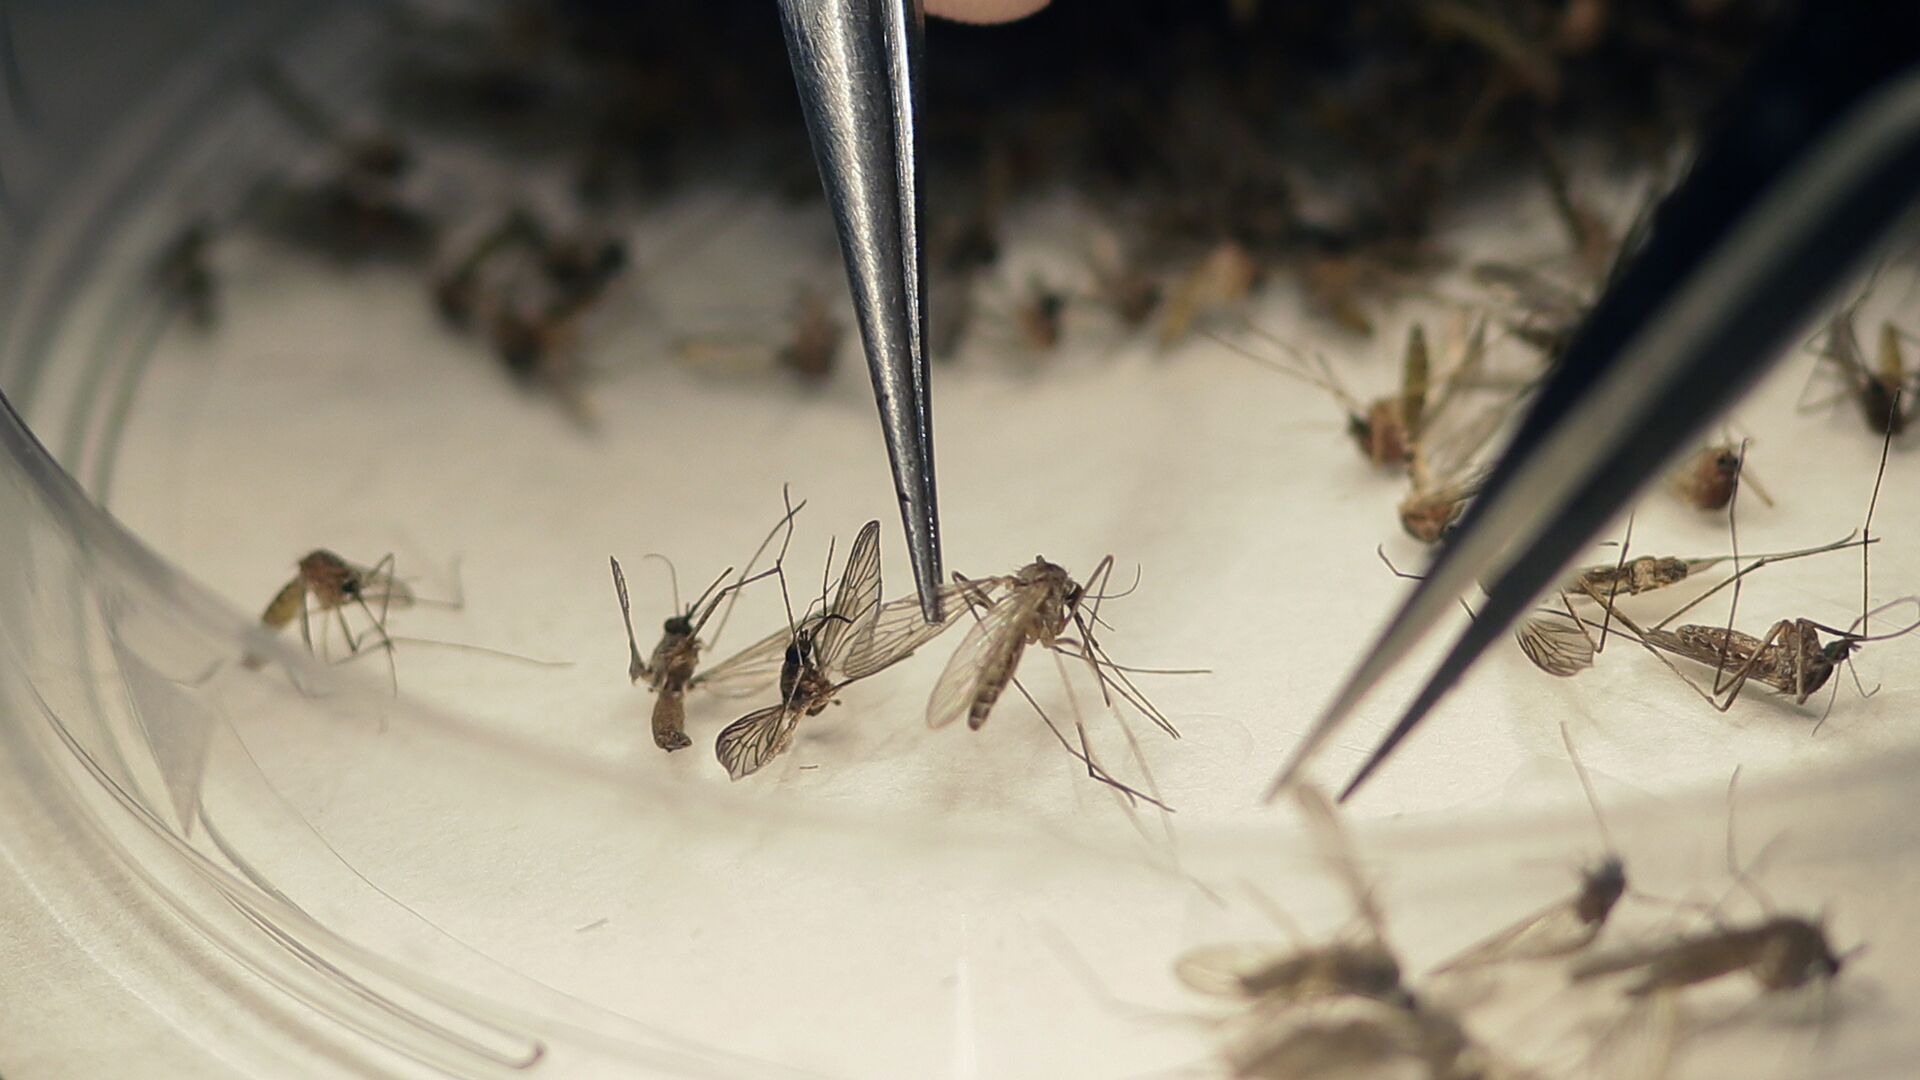 
Ağcaqanad bakteriyaları Denge qızdırması və Zika virusu ilə mübarizədə faydalı ola bilər
